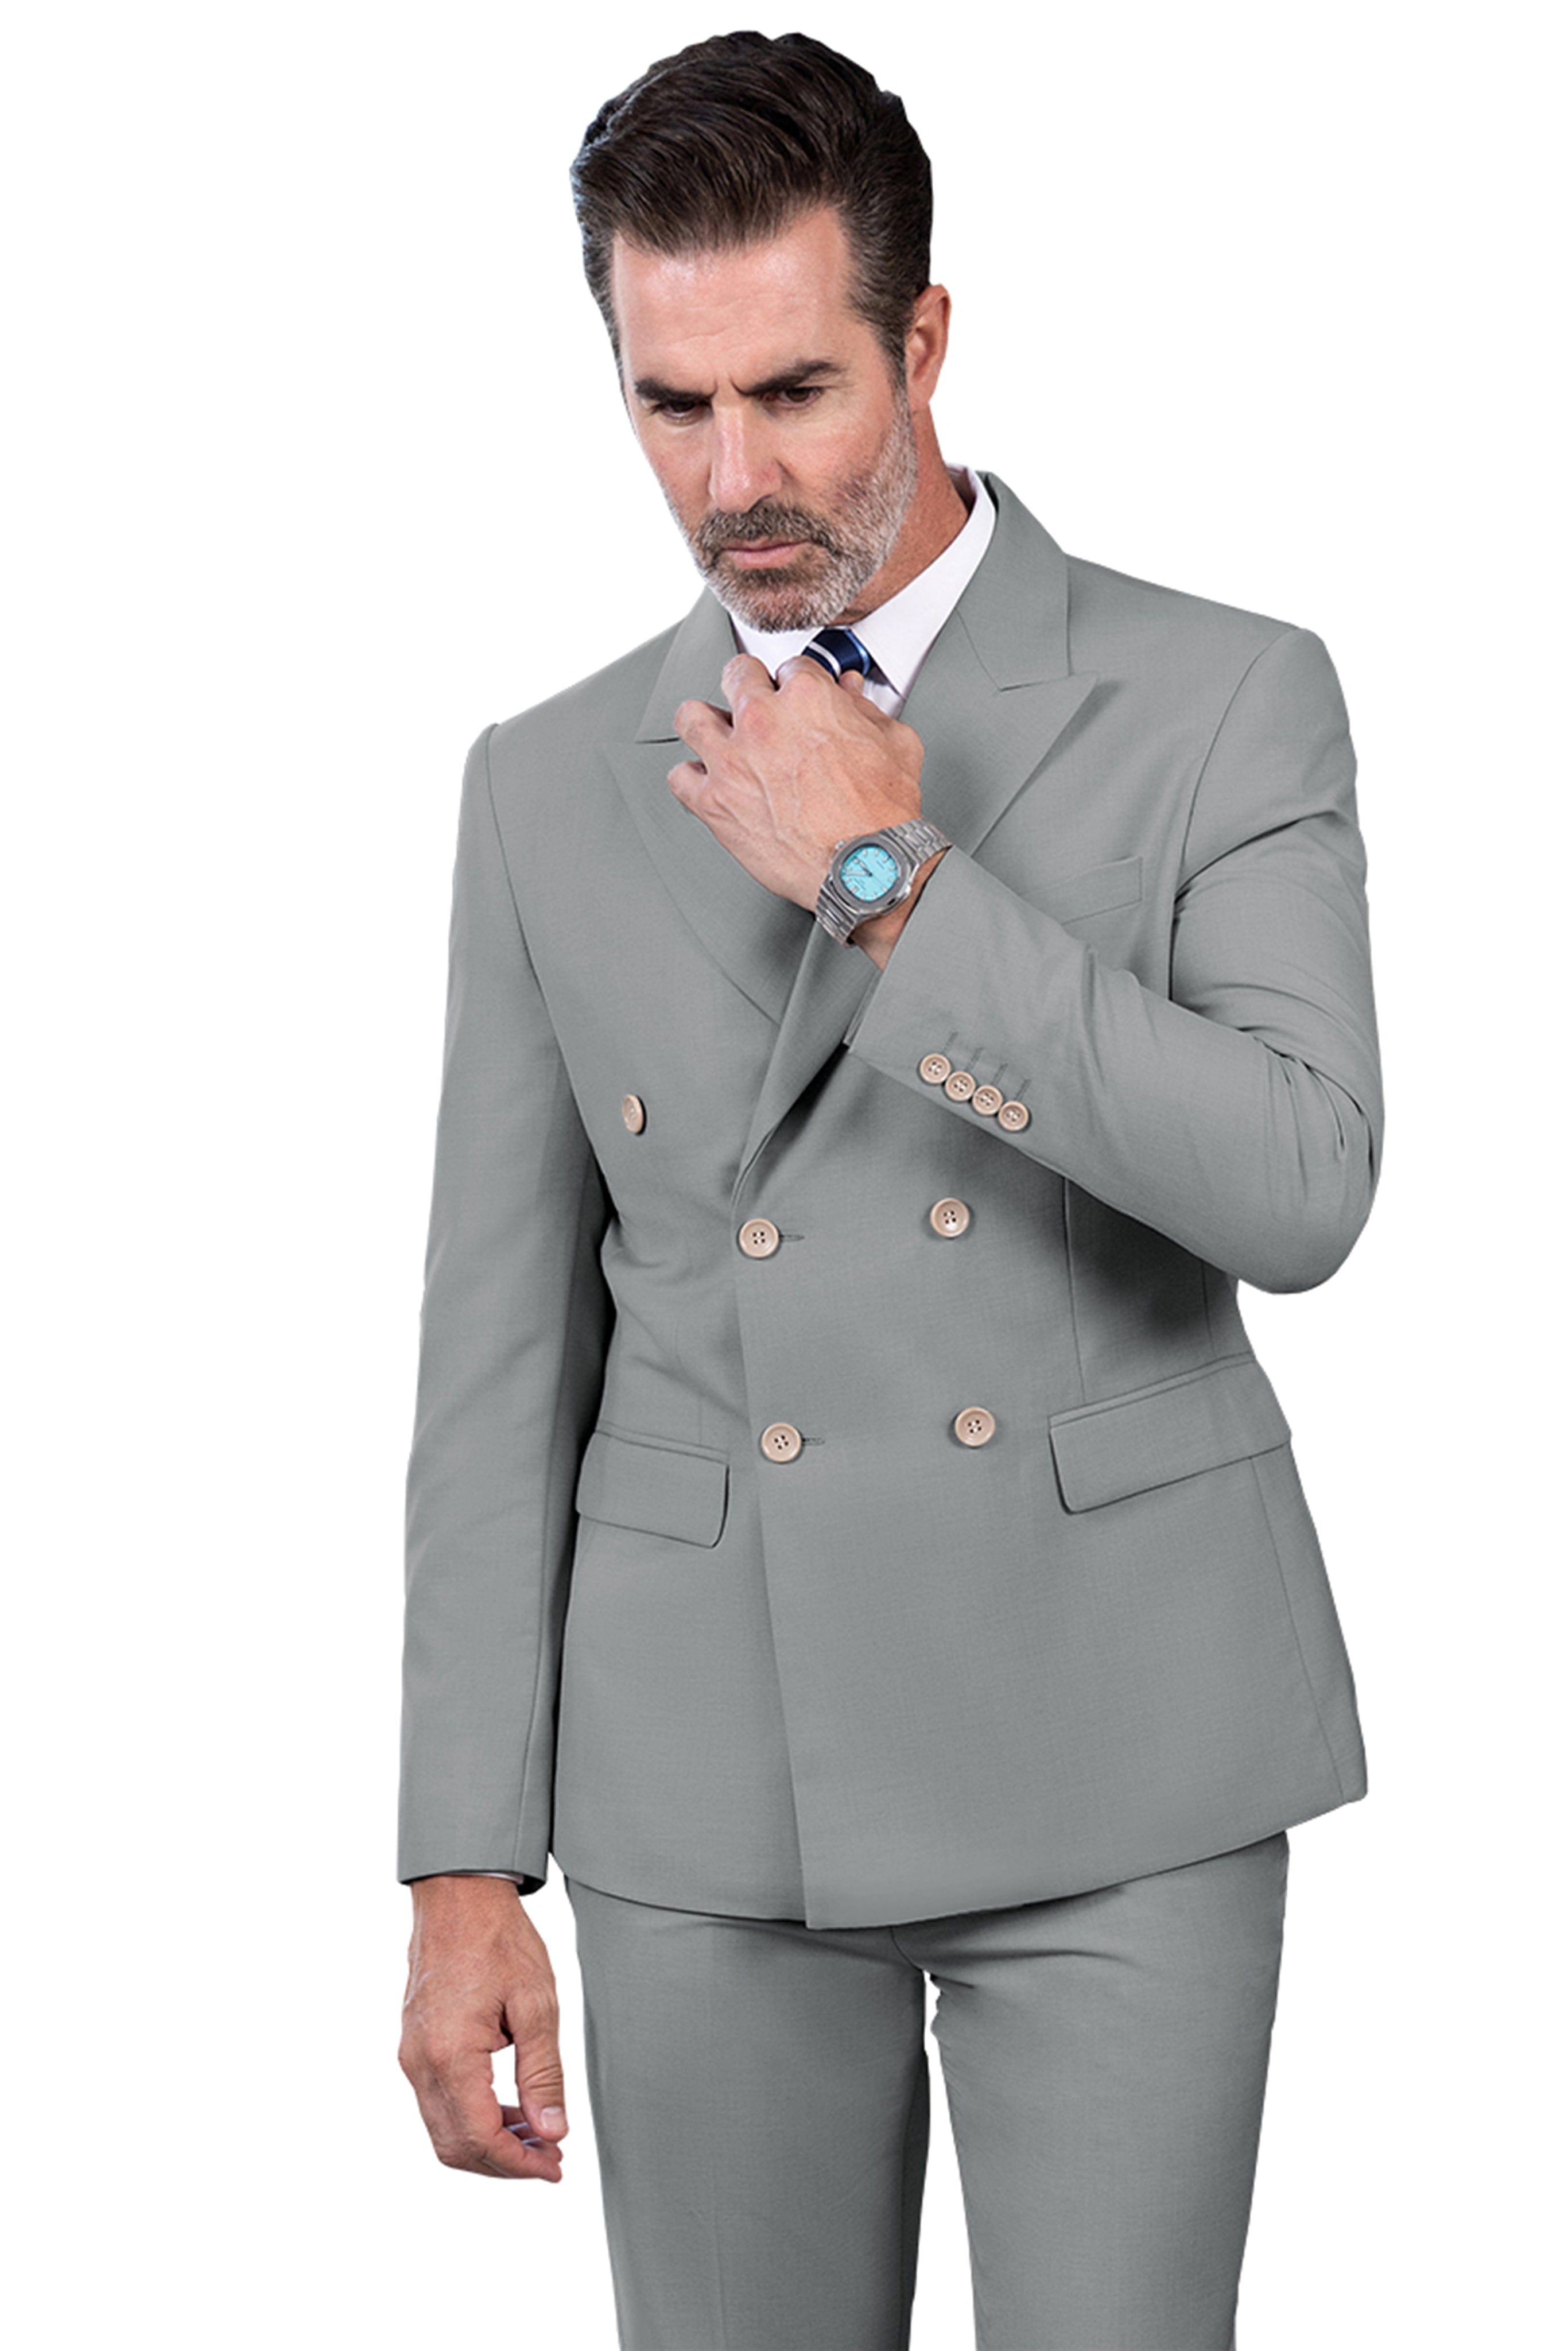 ceehuteey 2 Pieces Men's Regular Peak Lapel  Solid suit (Blazer+Pants)